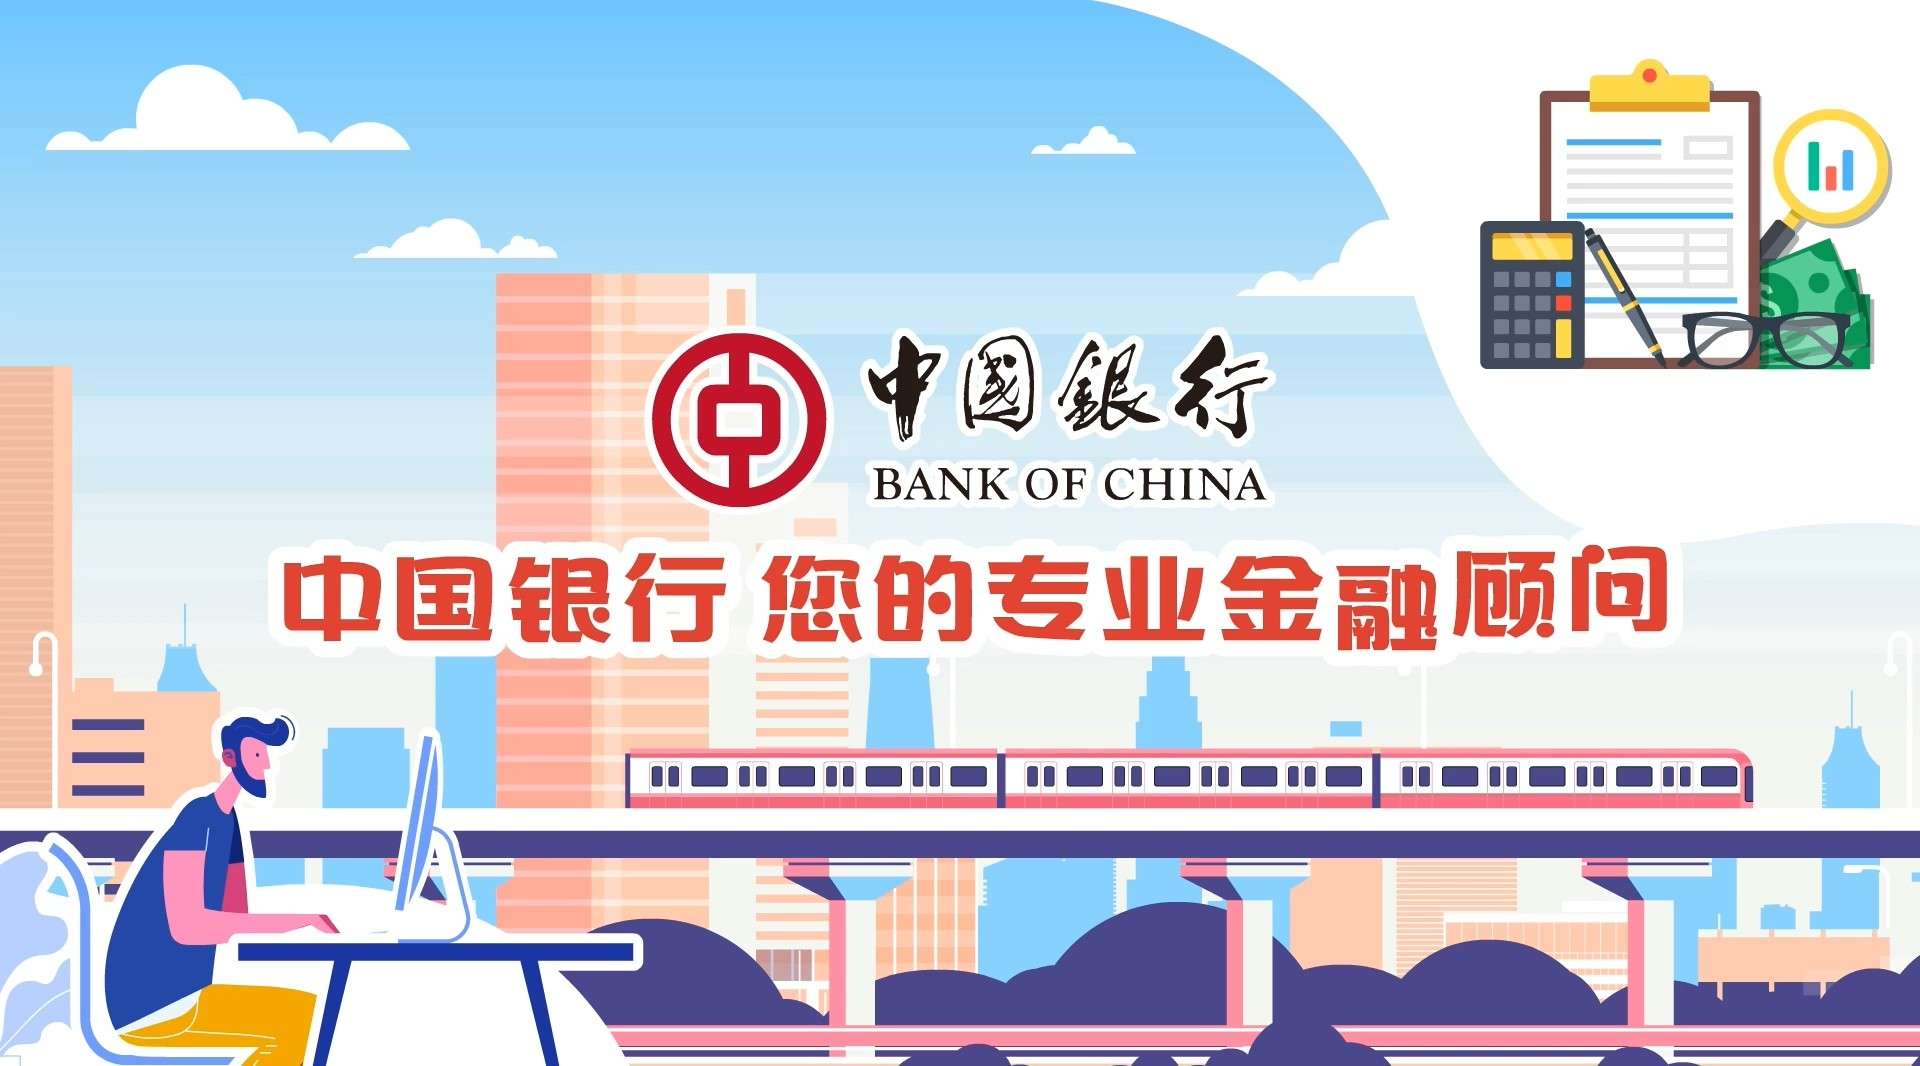 中国银行&百度合作MG动画